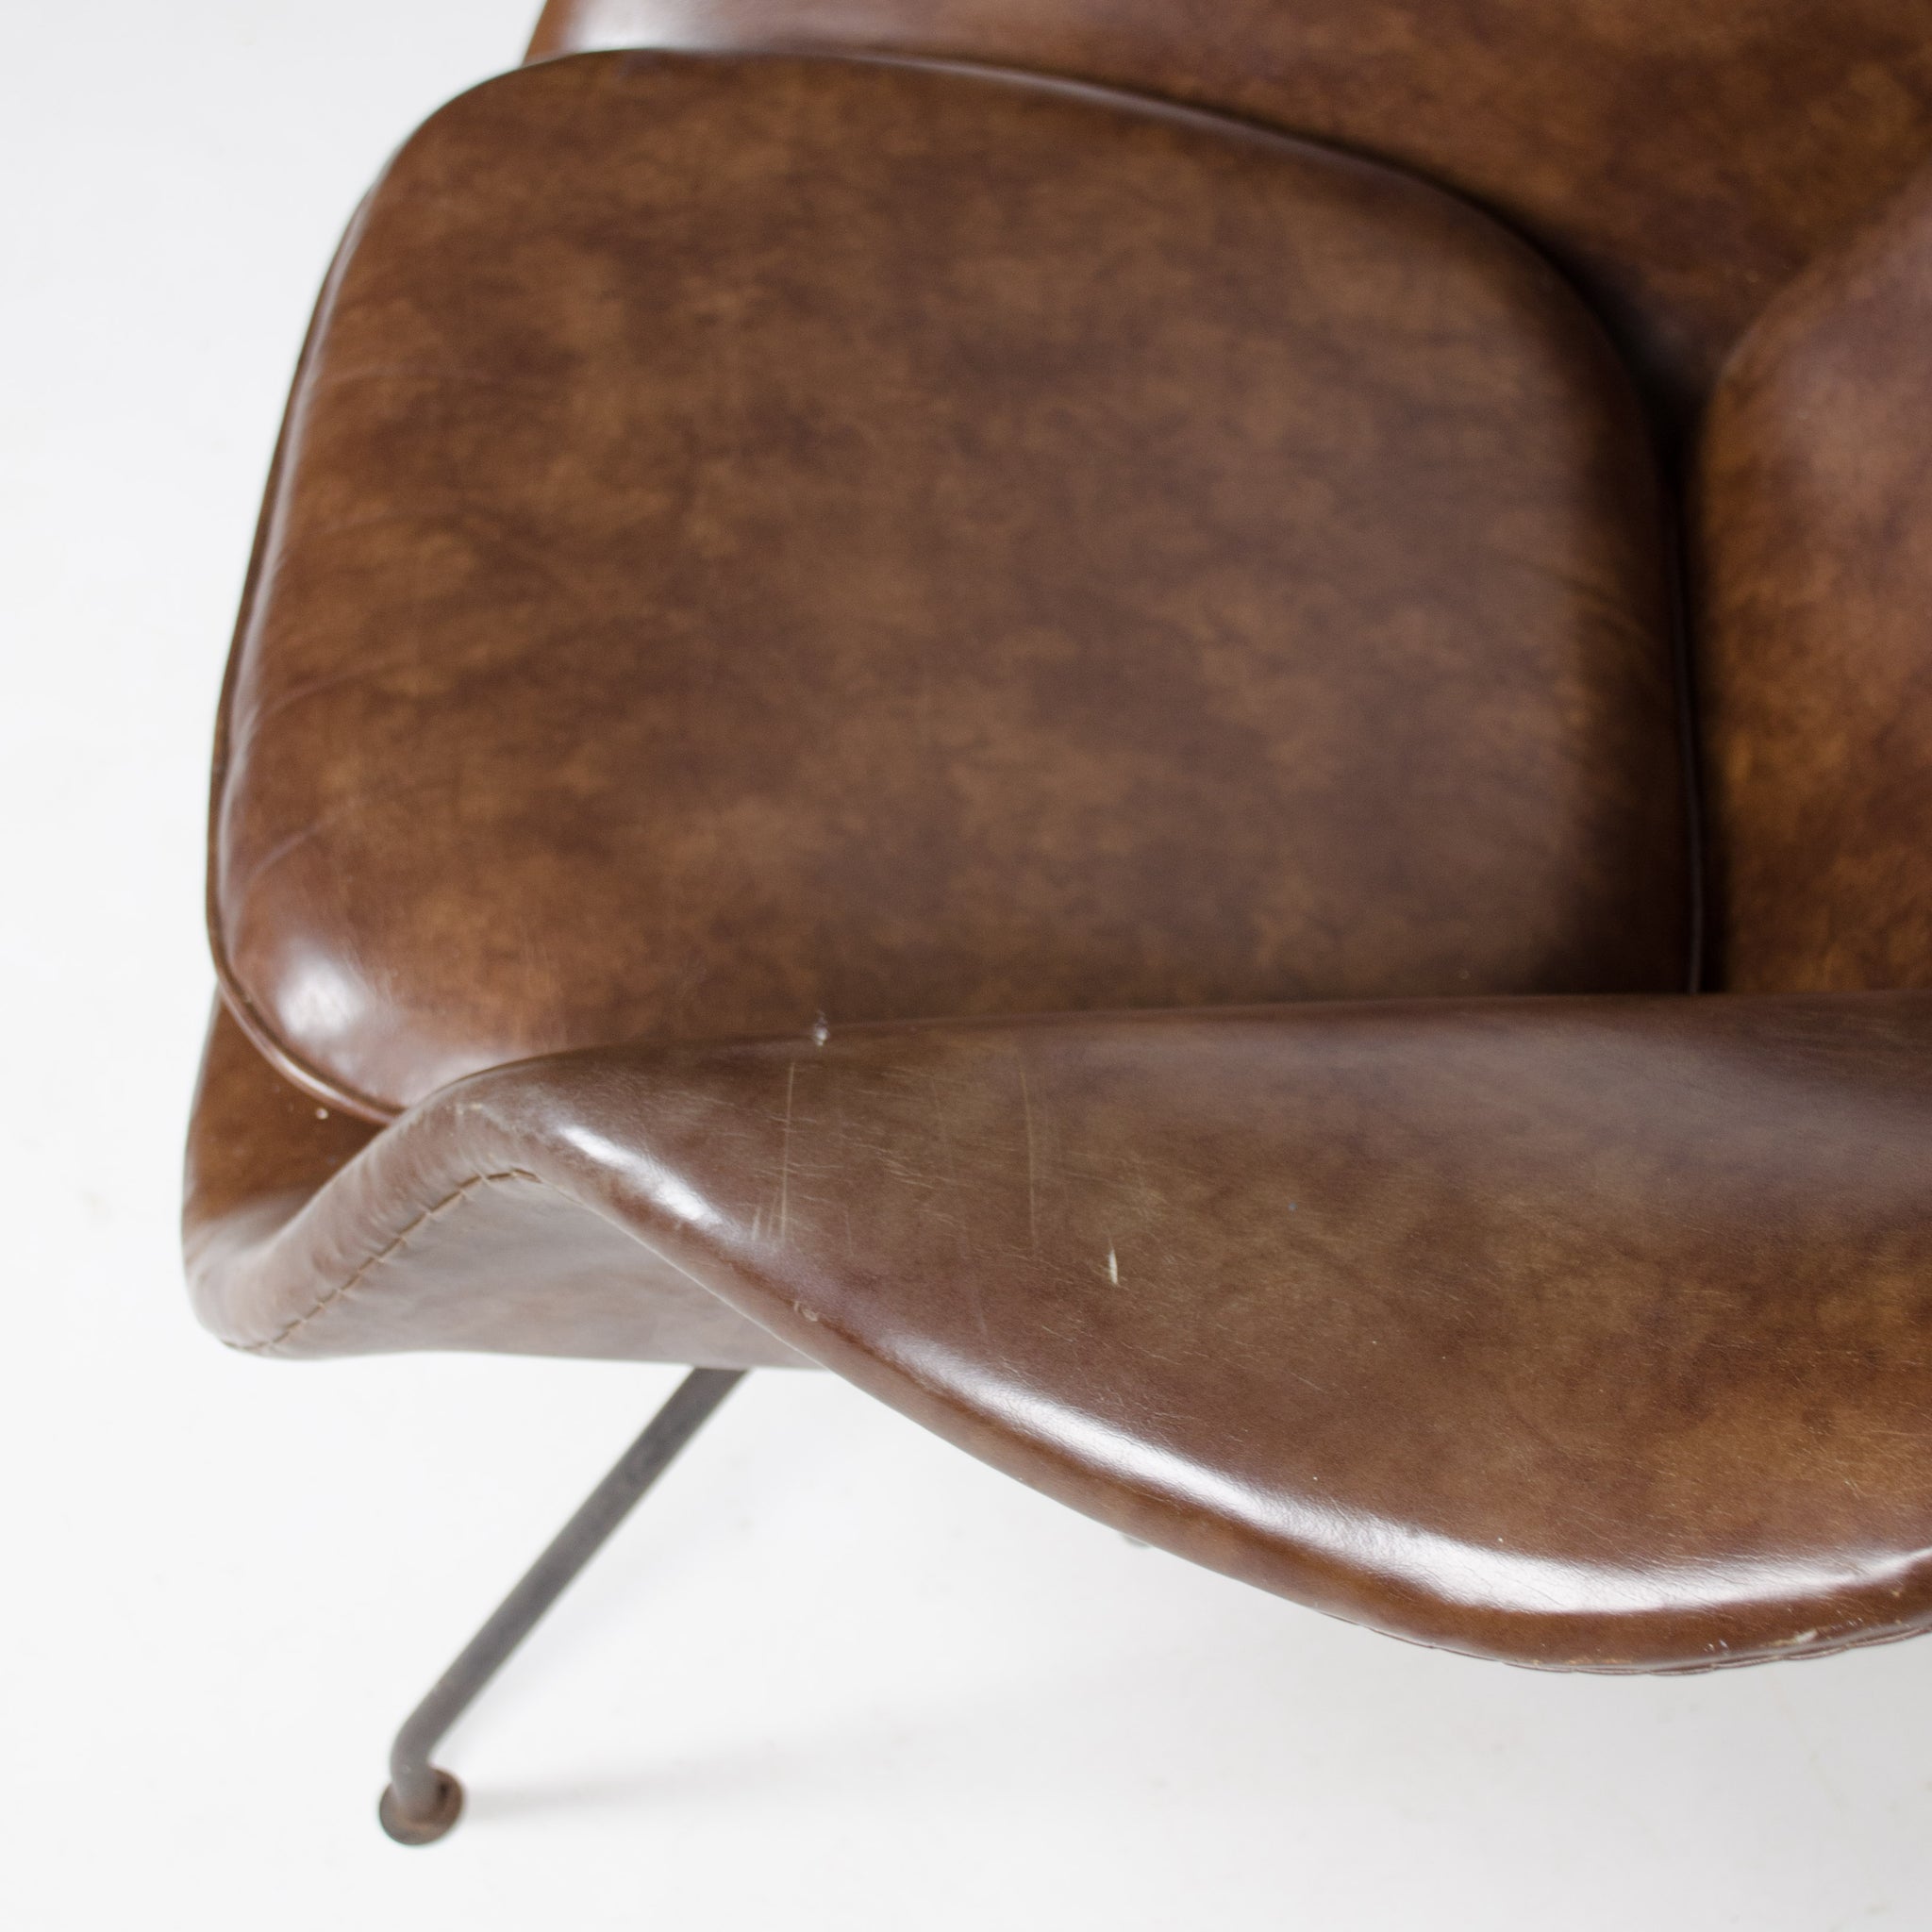 SOLD 1960’s Eero Saarinen Womb Chair Knoll International Vintage Black Frame